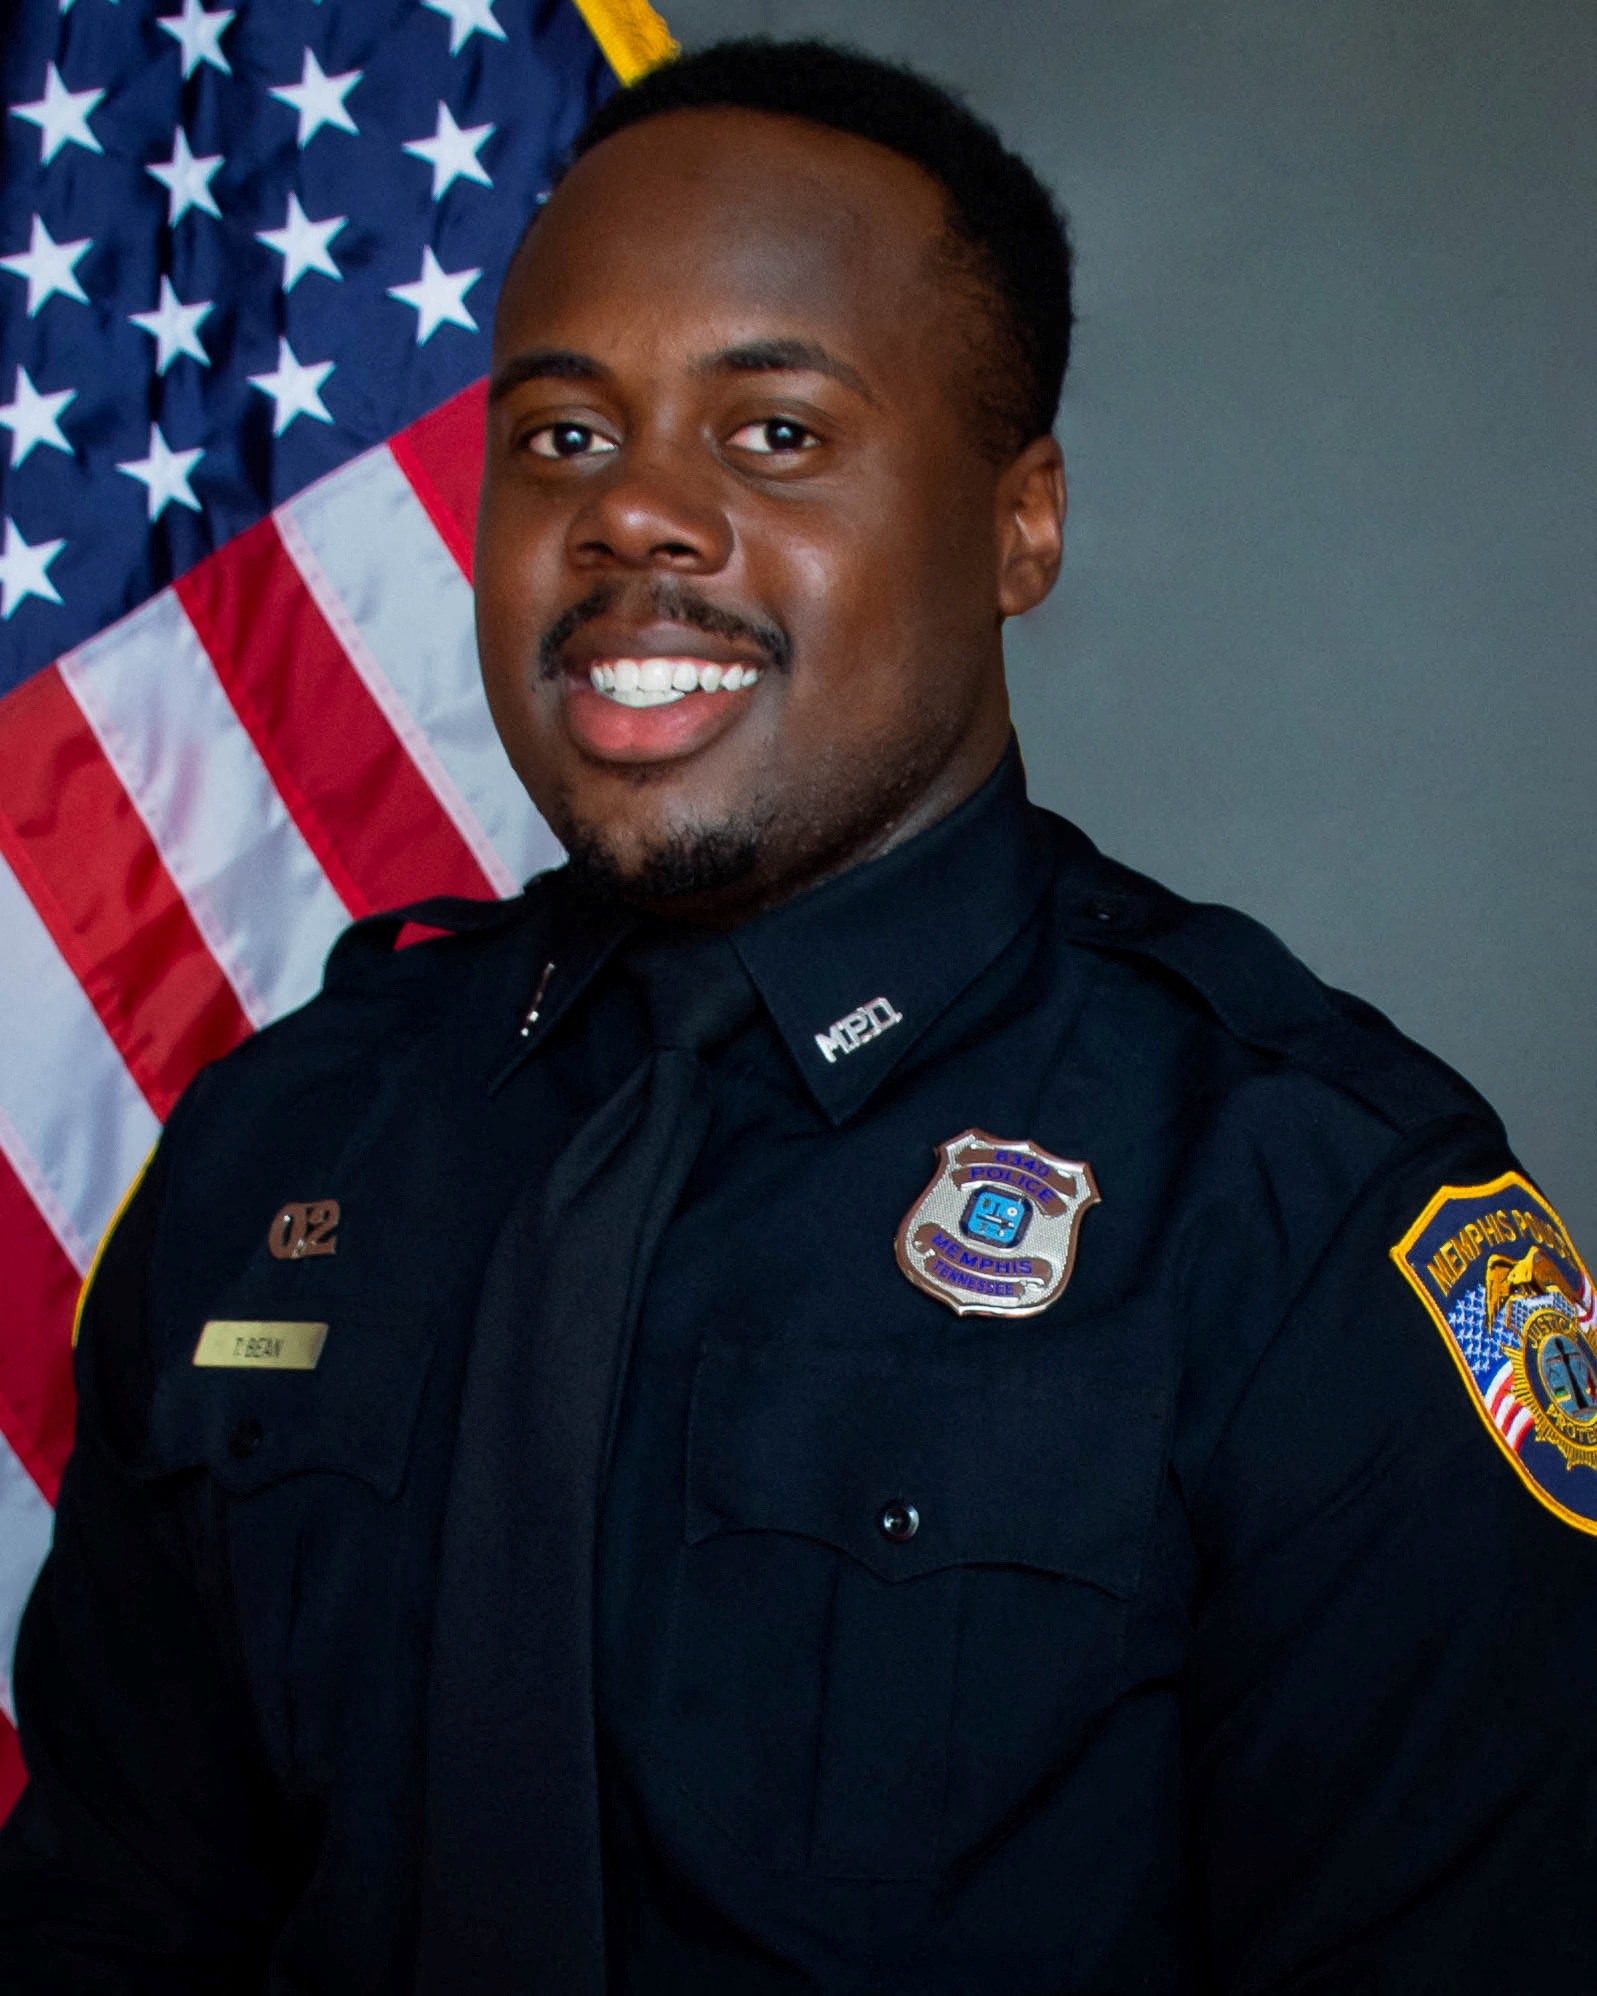 El oficial Tadarrius Bean, que había sido contratado por el Departamento de Policía de Memphis en agosto de 2020 y fue despedido con otros cuatro oficiales